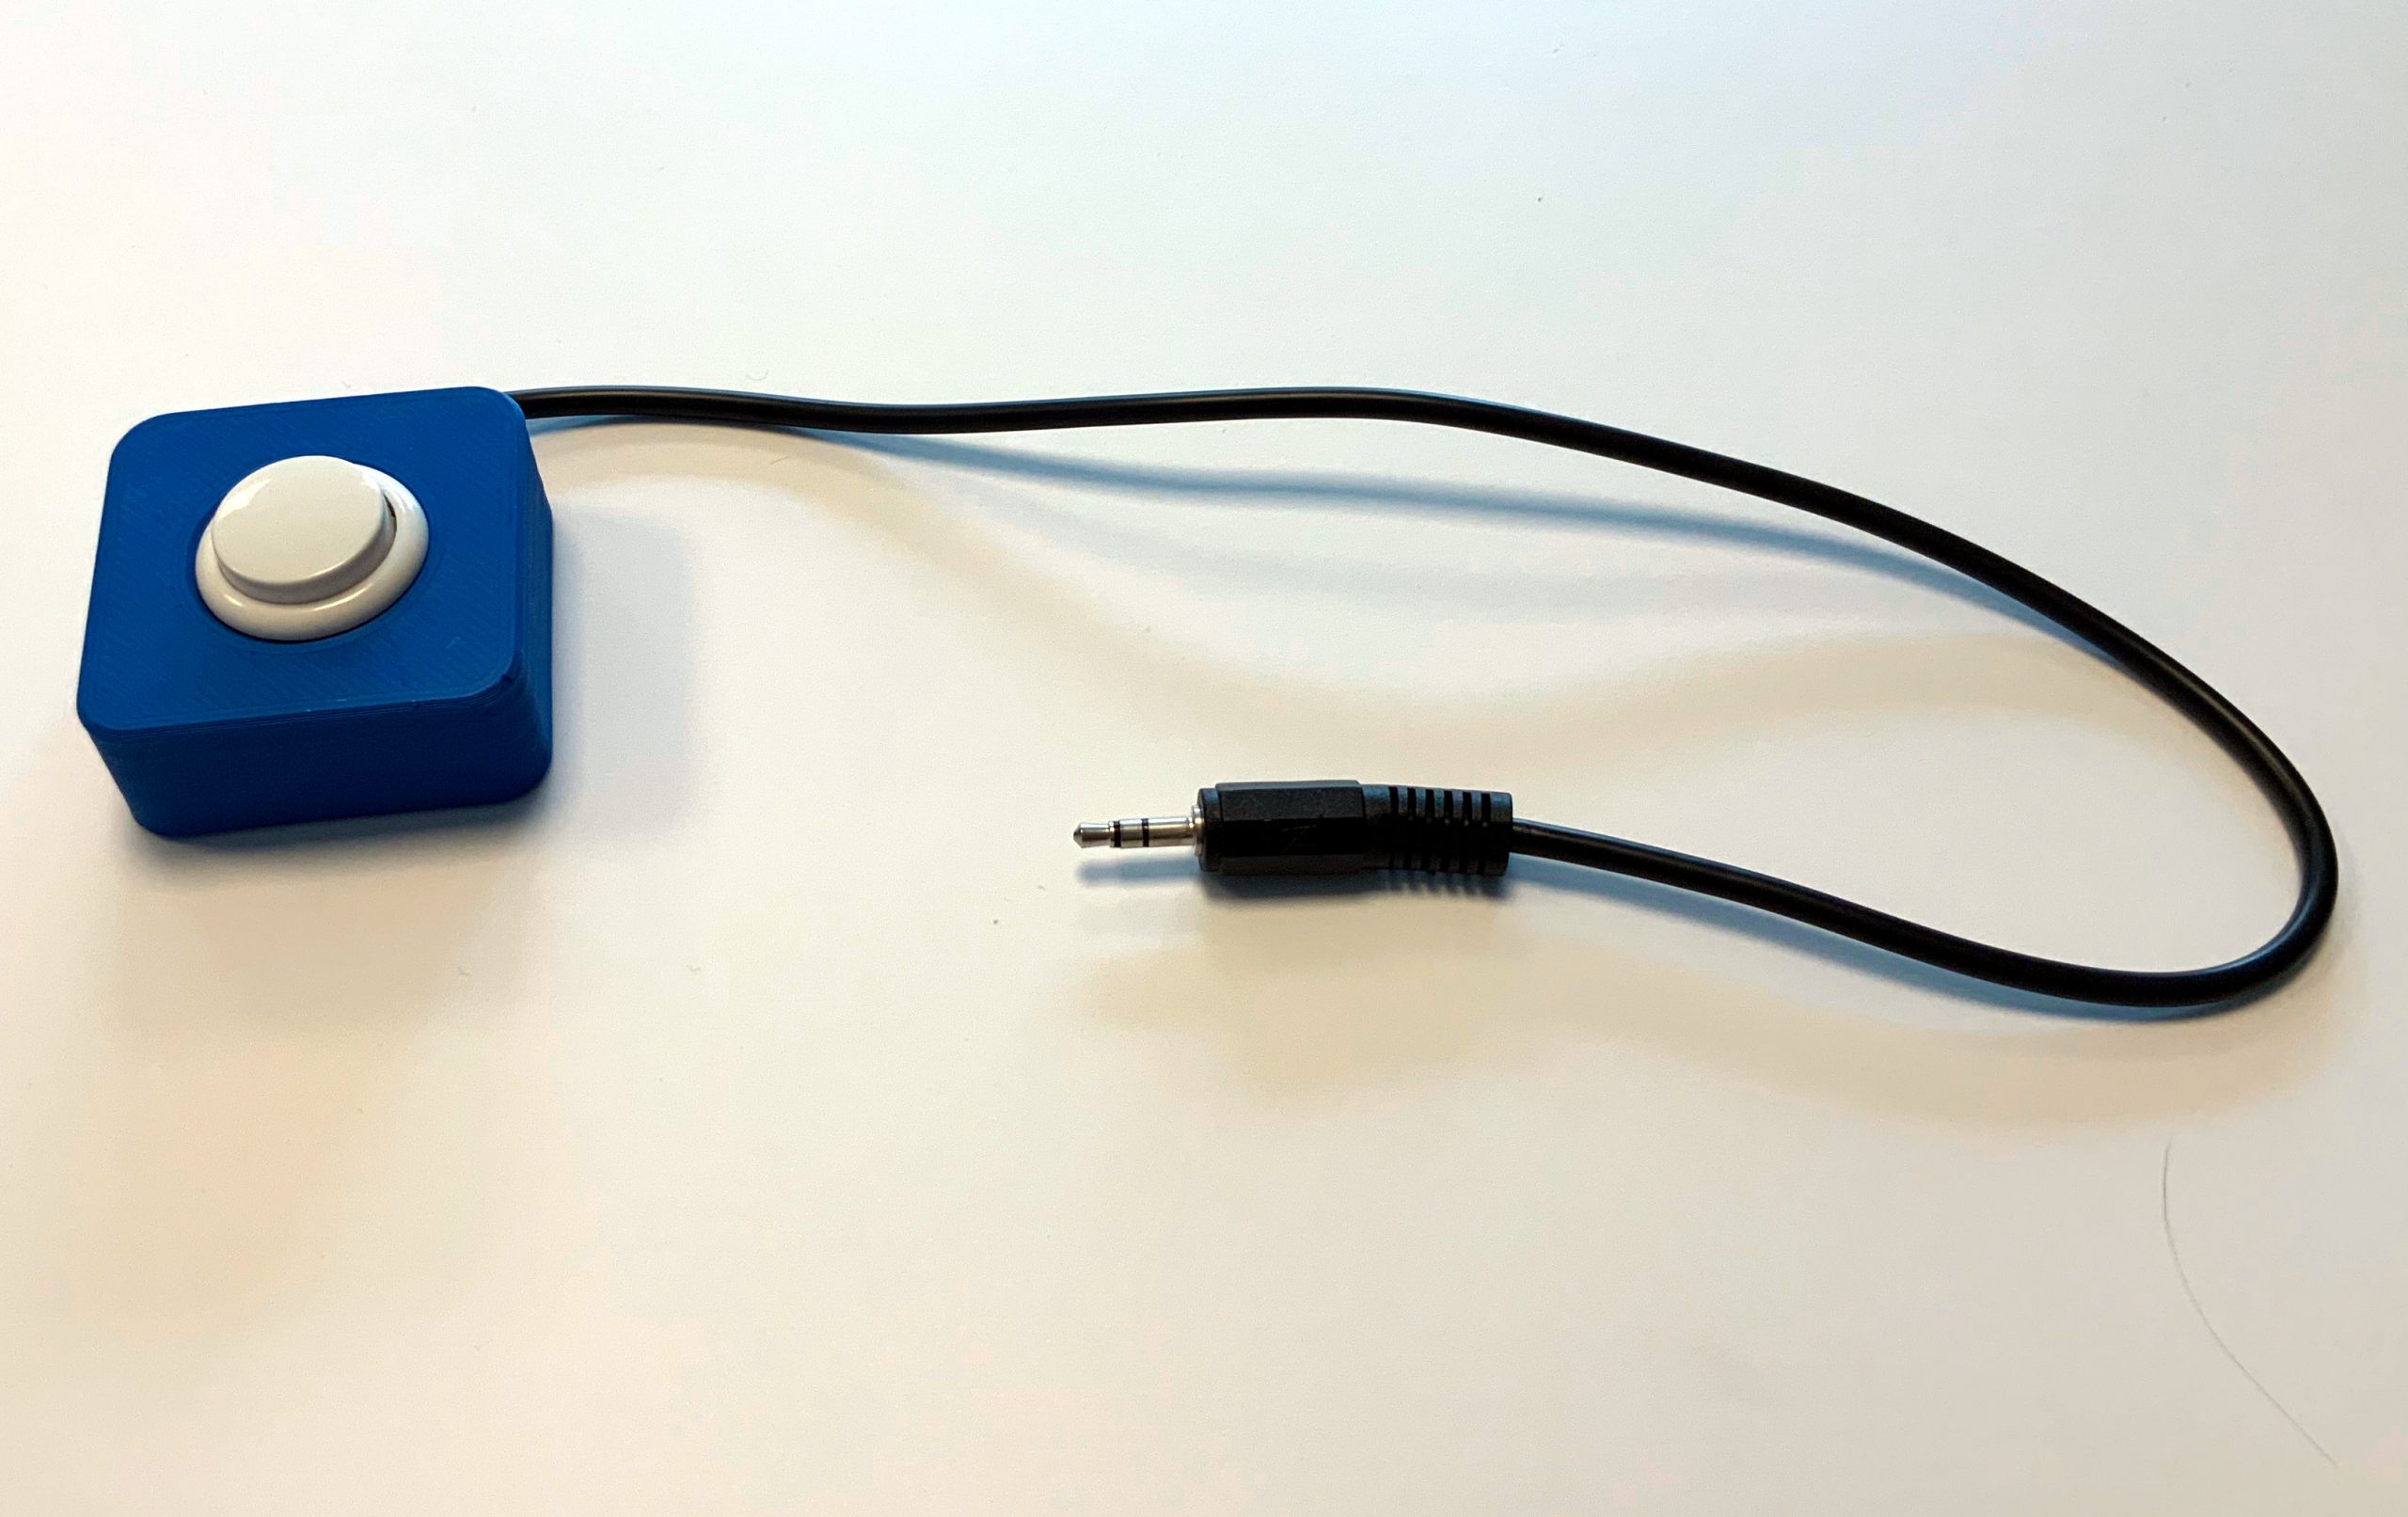 blaues Buttongehäuse mit weißem Knopf und 43cm Anschlusskabel mit 3.5mm Klinkenstecker